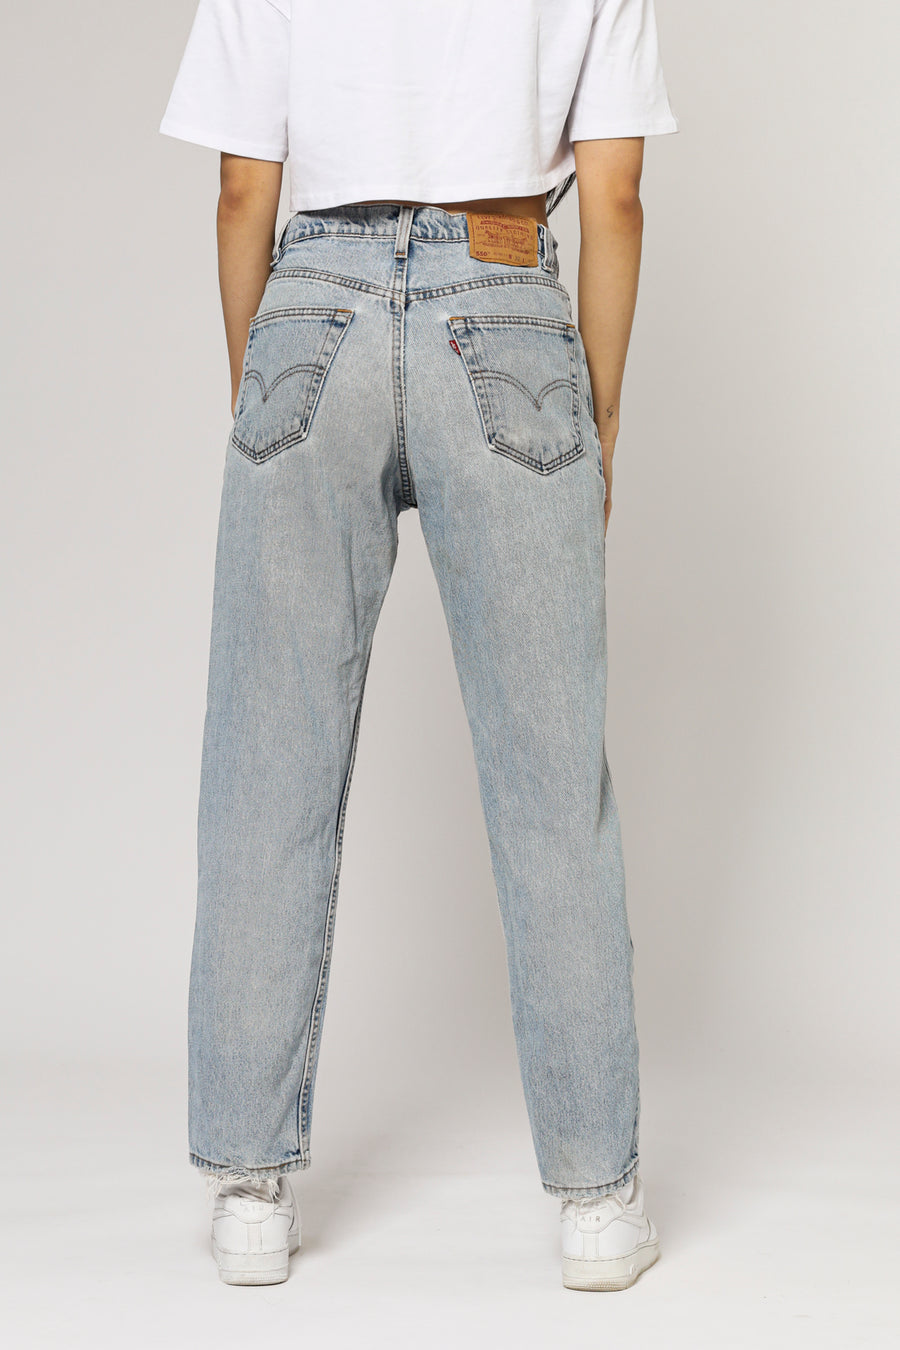 Vintage Levi's Jeans - W31